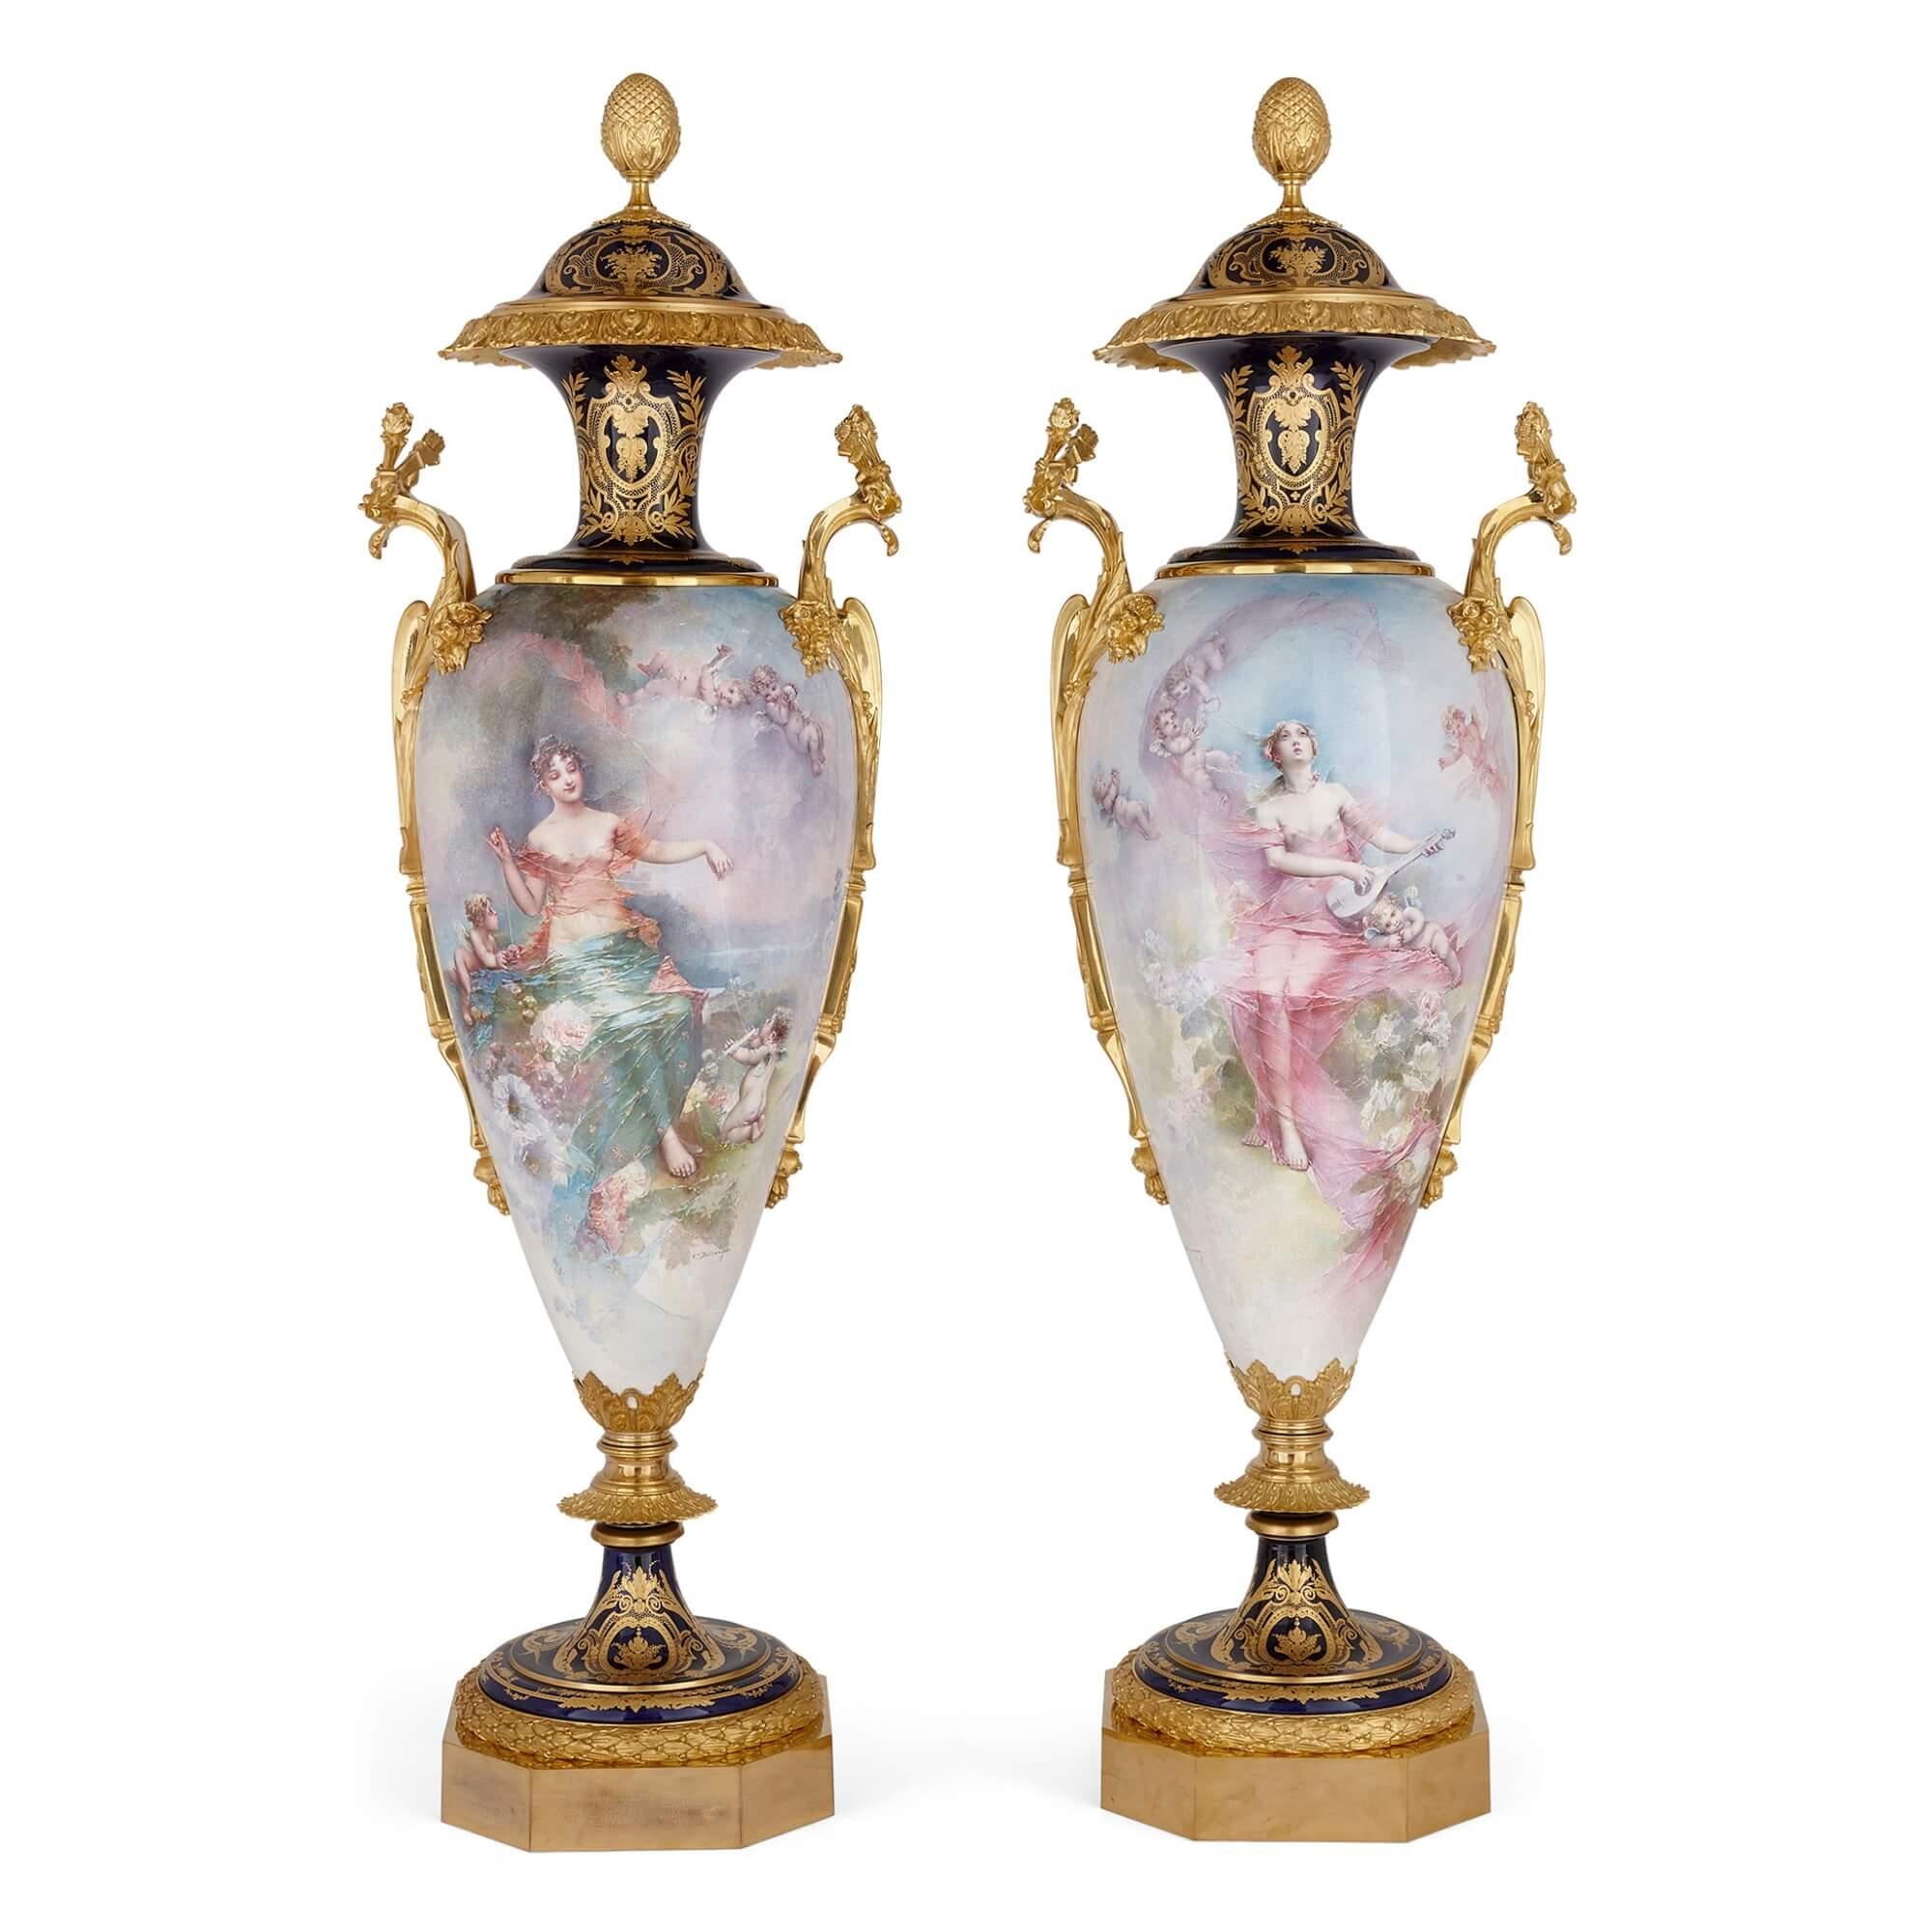 Paire de très grands vases français en porcelaine de Sèvres et bronze doré
Français, fin du 19e siècle 
Hauteur 151cm, largeur 45cm, profondeur 39cm

Exécutée dans le style de Sèvres, l'une des meilleures manufactures de porcelaine, cette paire